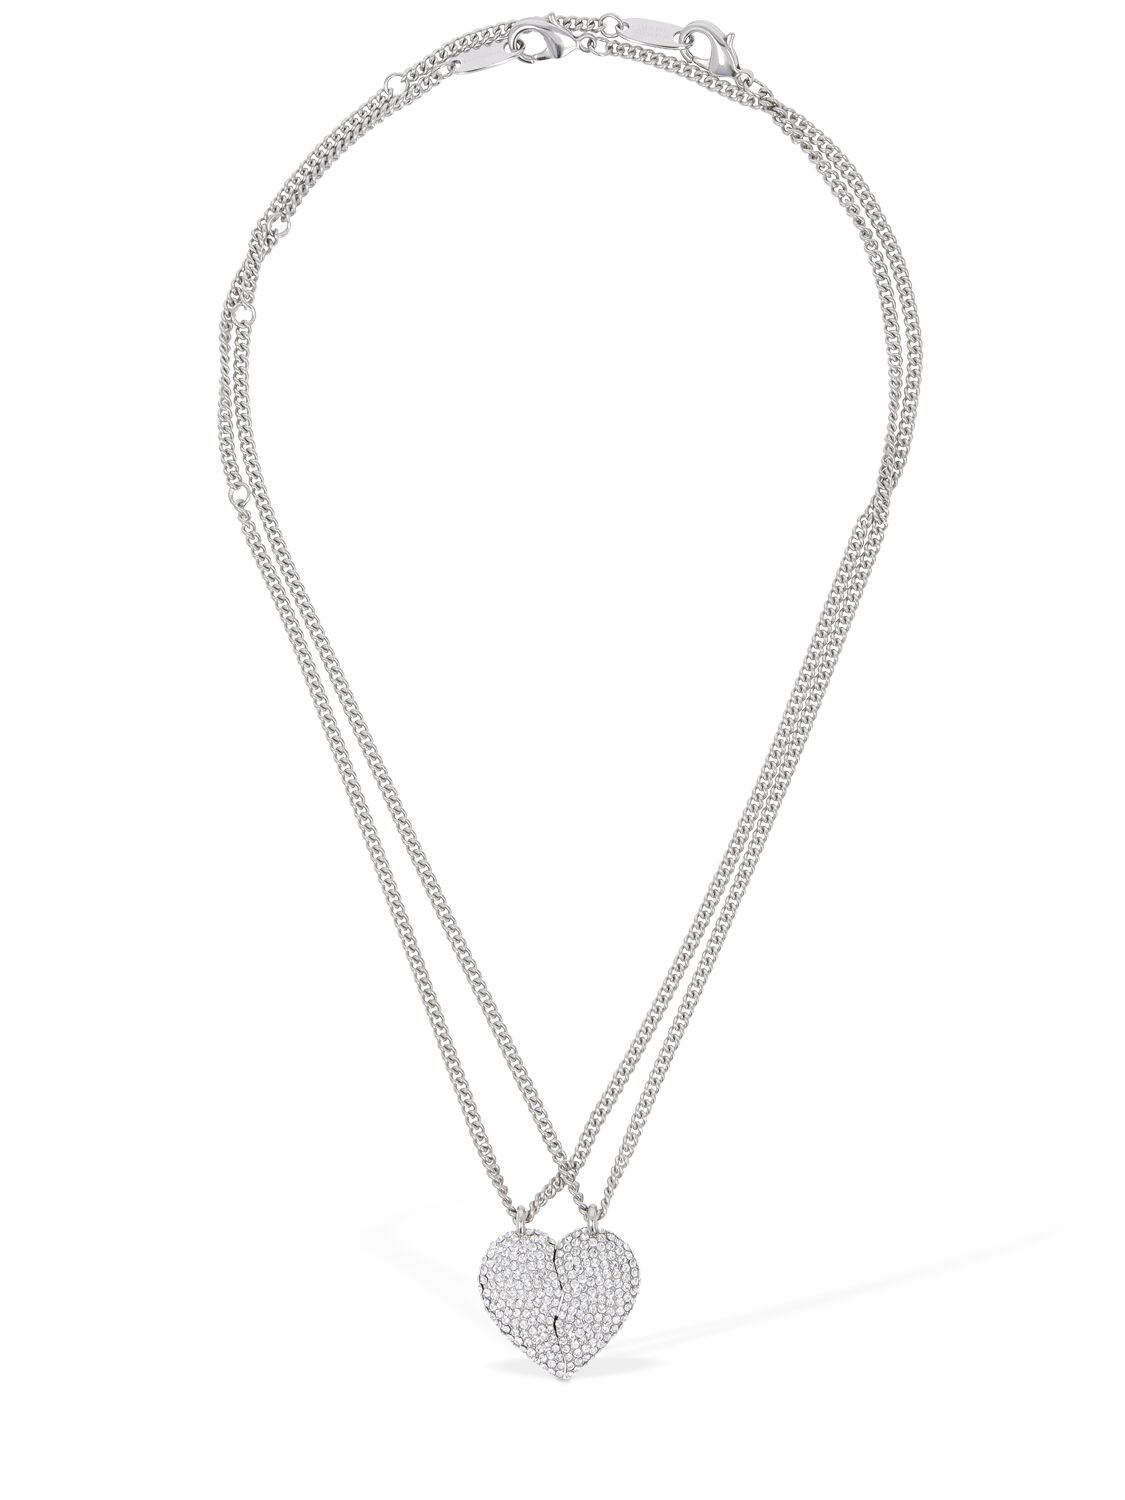 Image of Lovelock Brass & Glass Necklace